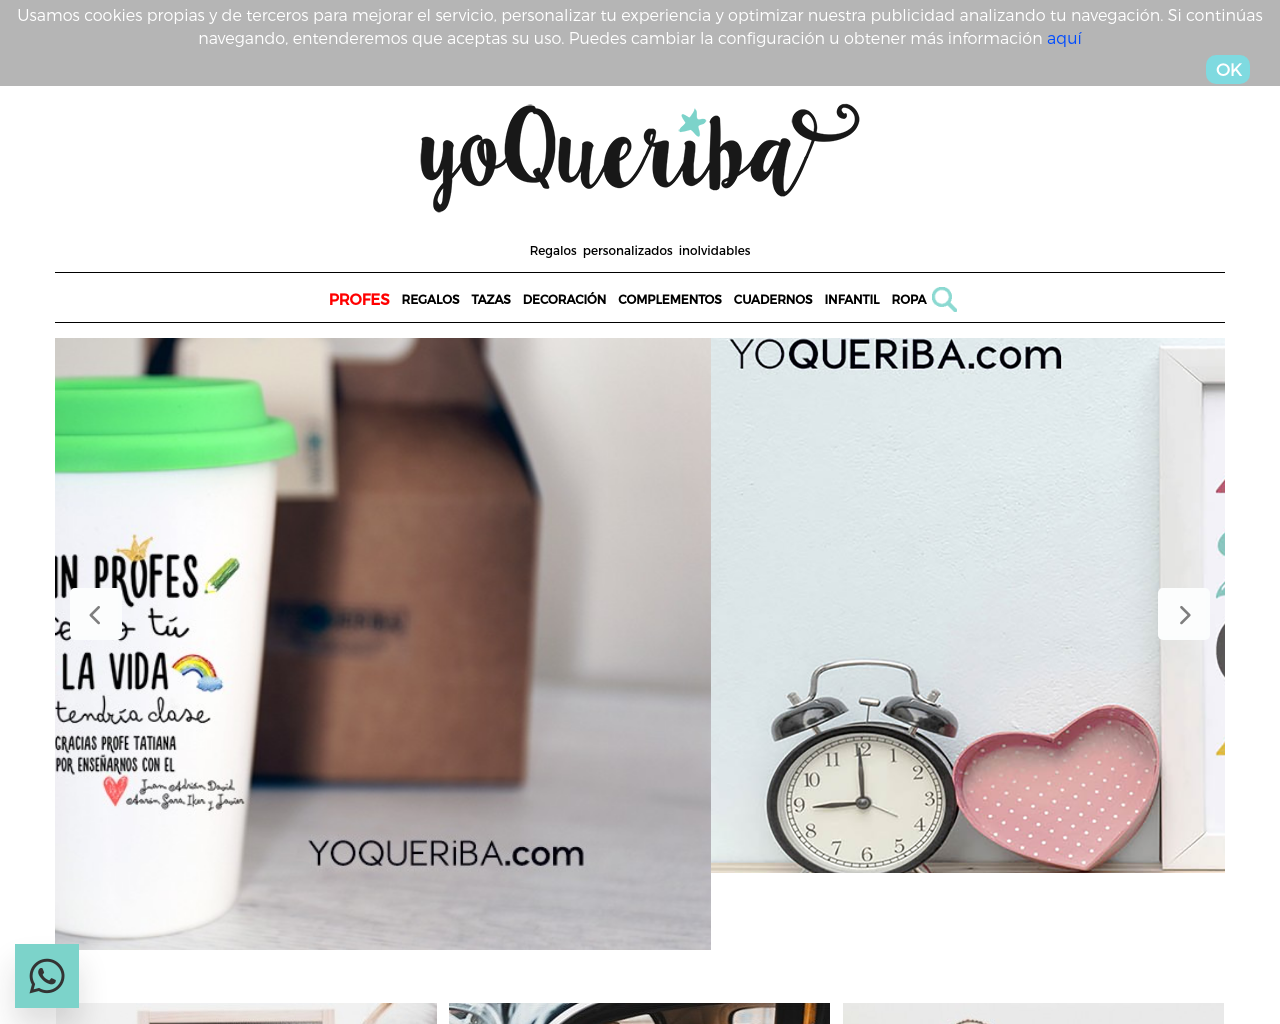 yoqueriba.com